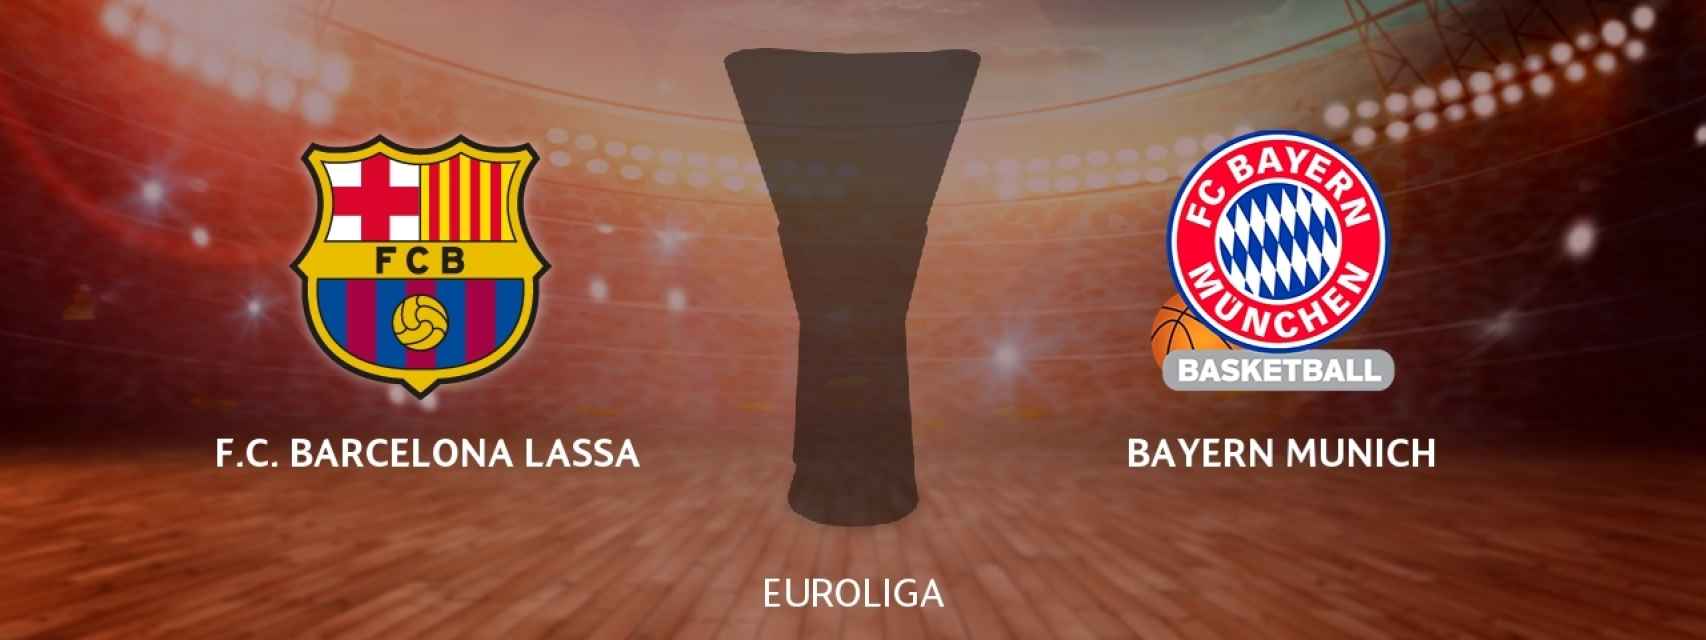 Barcelona Lassa - Bayern Munich, siga en directo el partido de la Euroliga